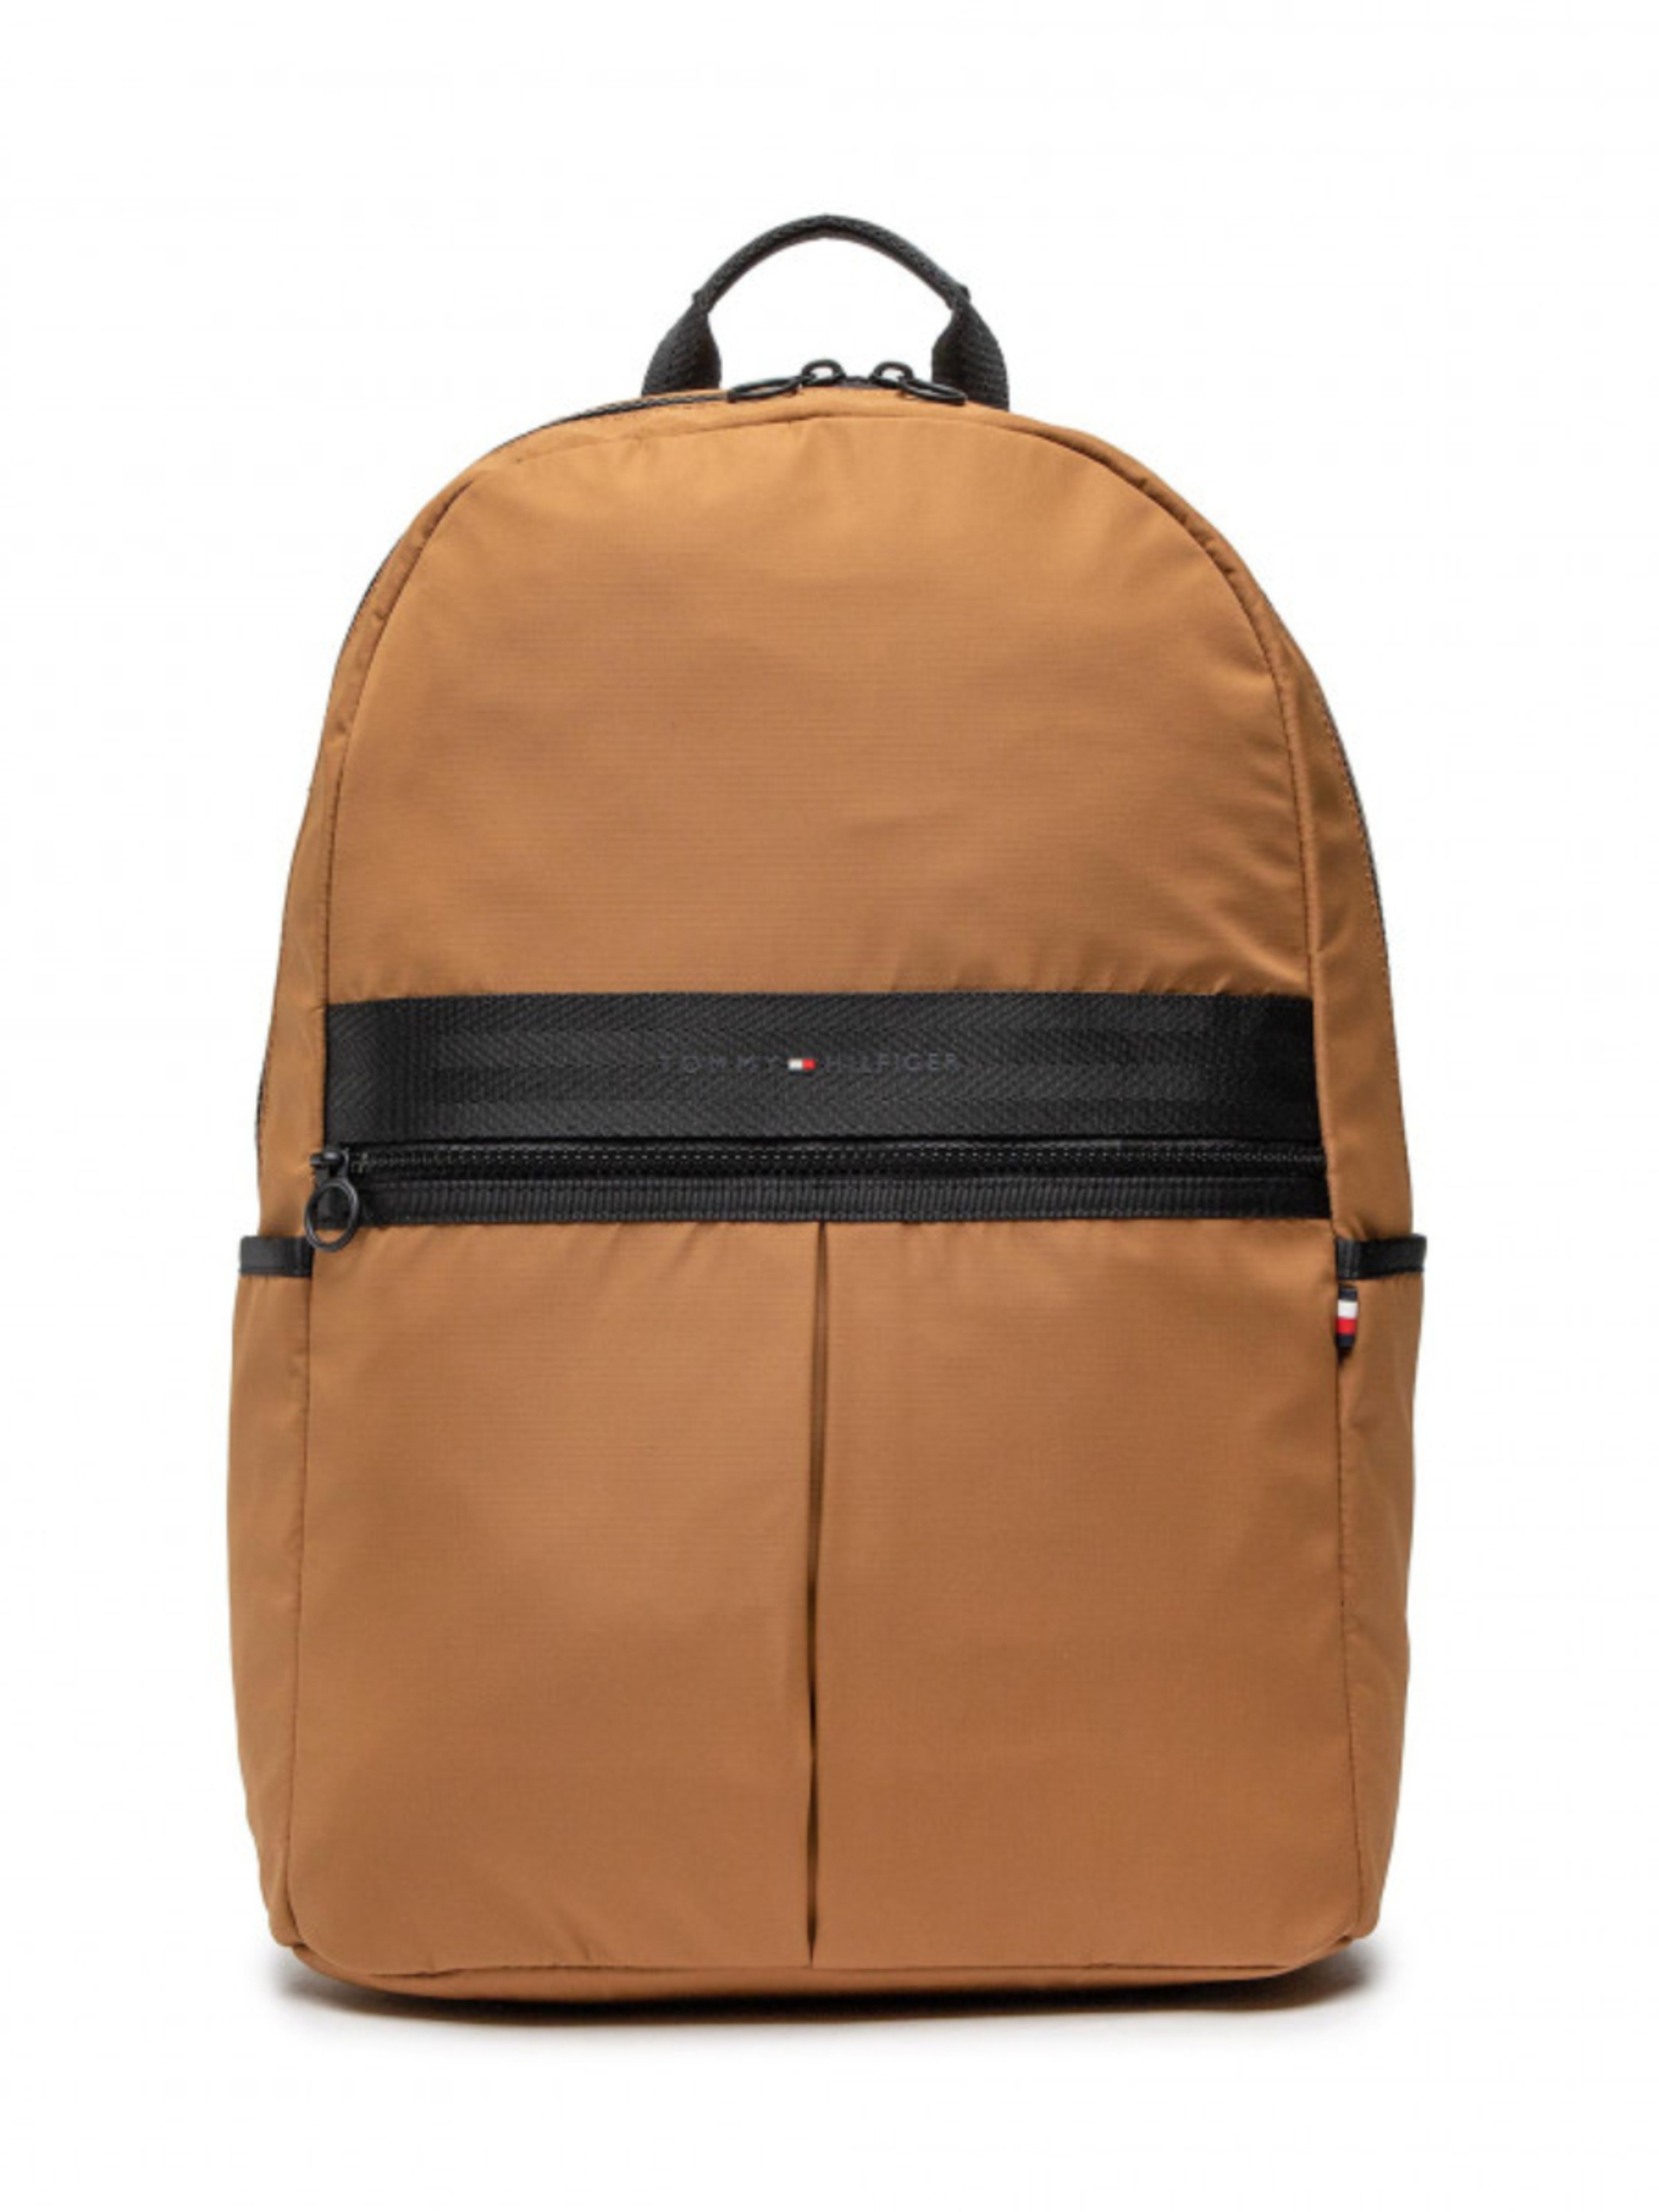 Tommy Hilfiger men's brown backpack